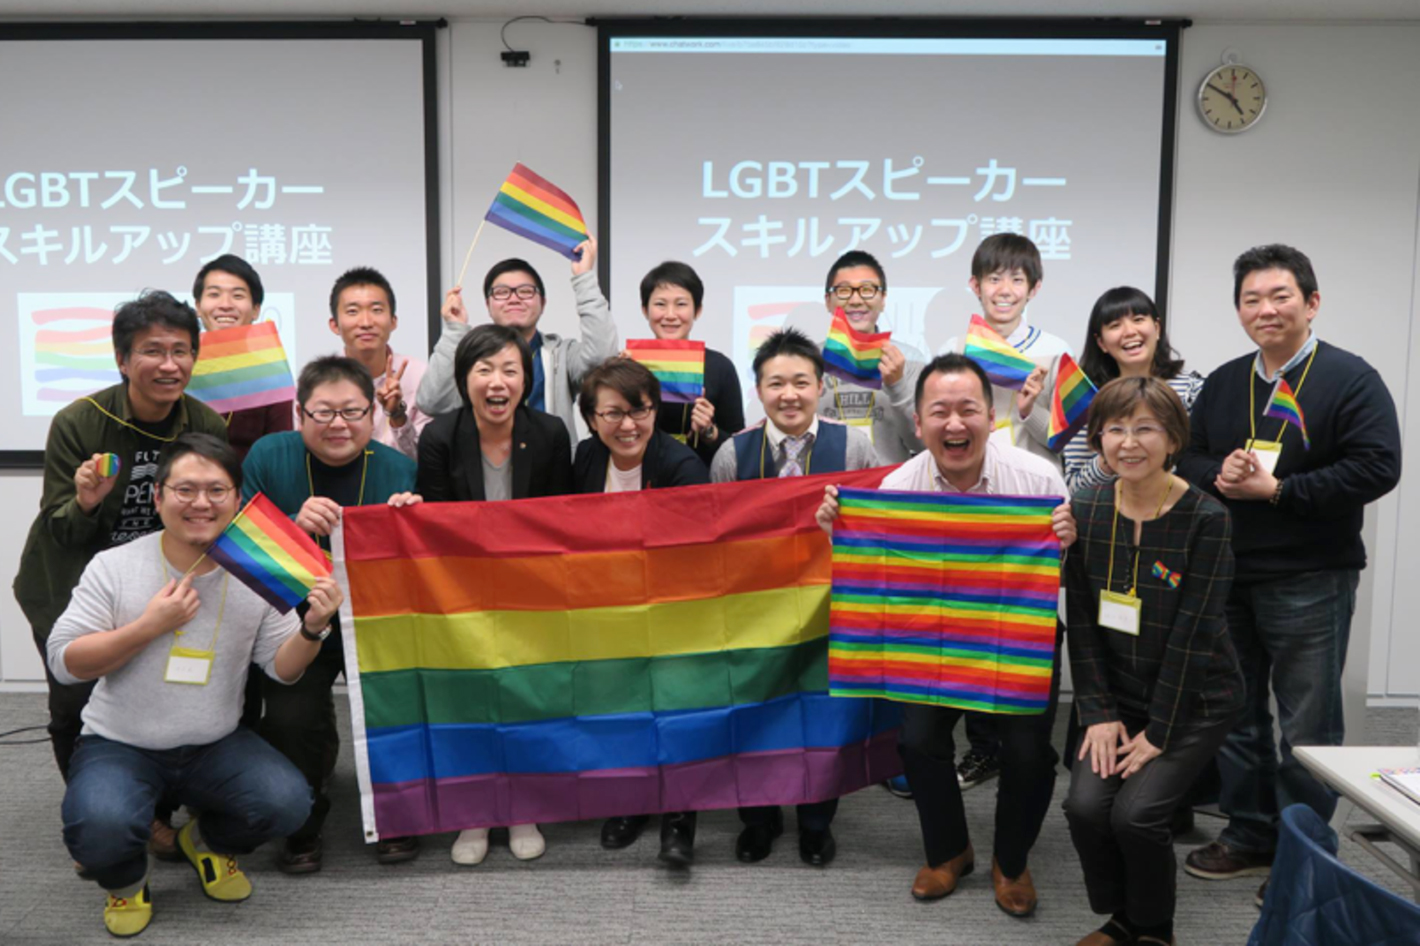 LGBTスピーカー・スキルアップ講座